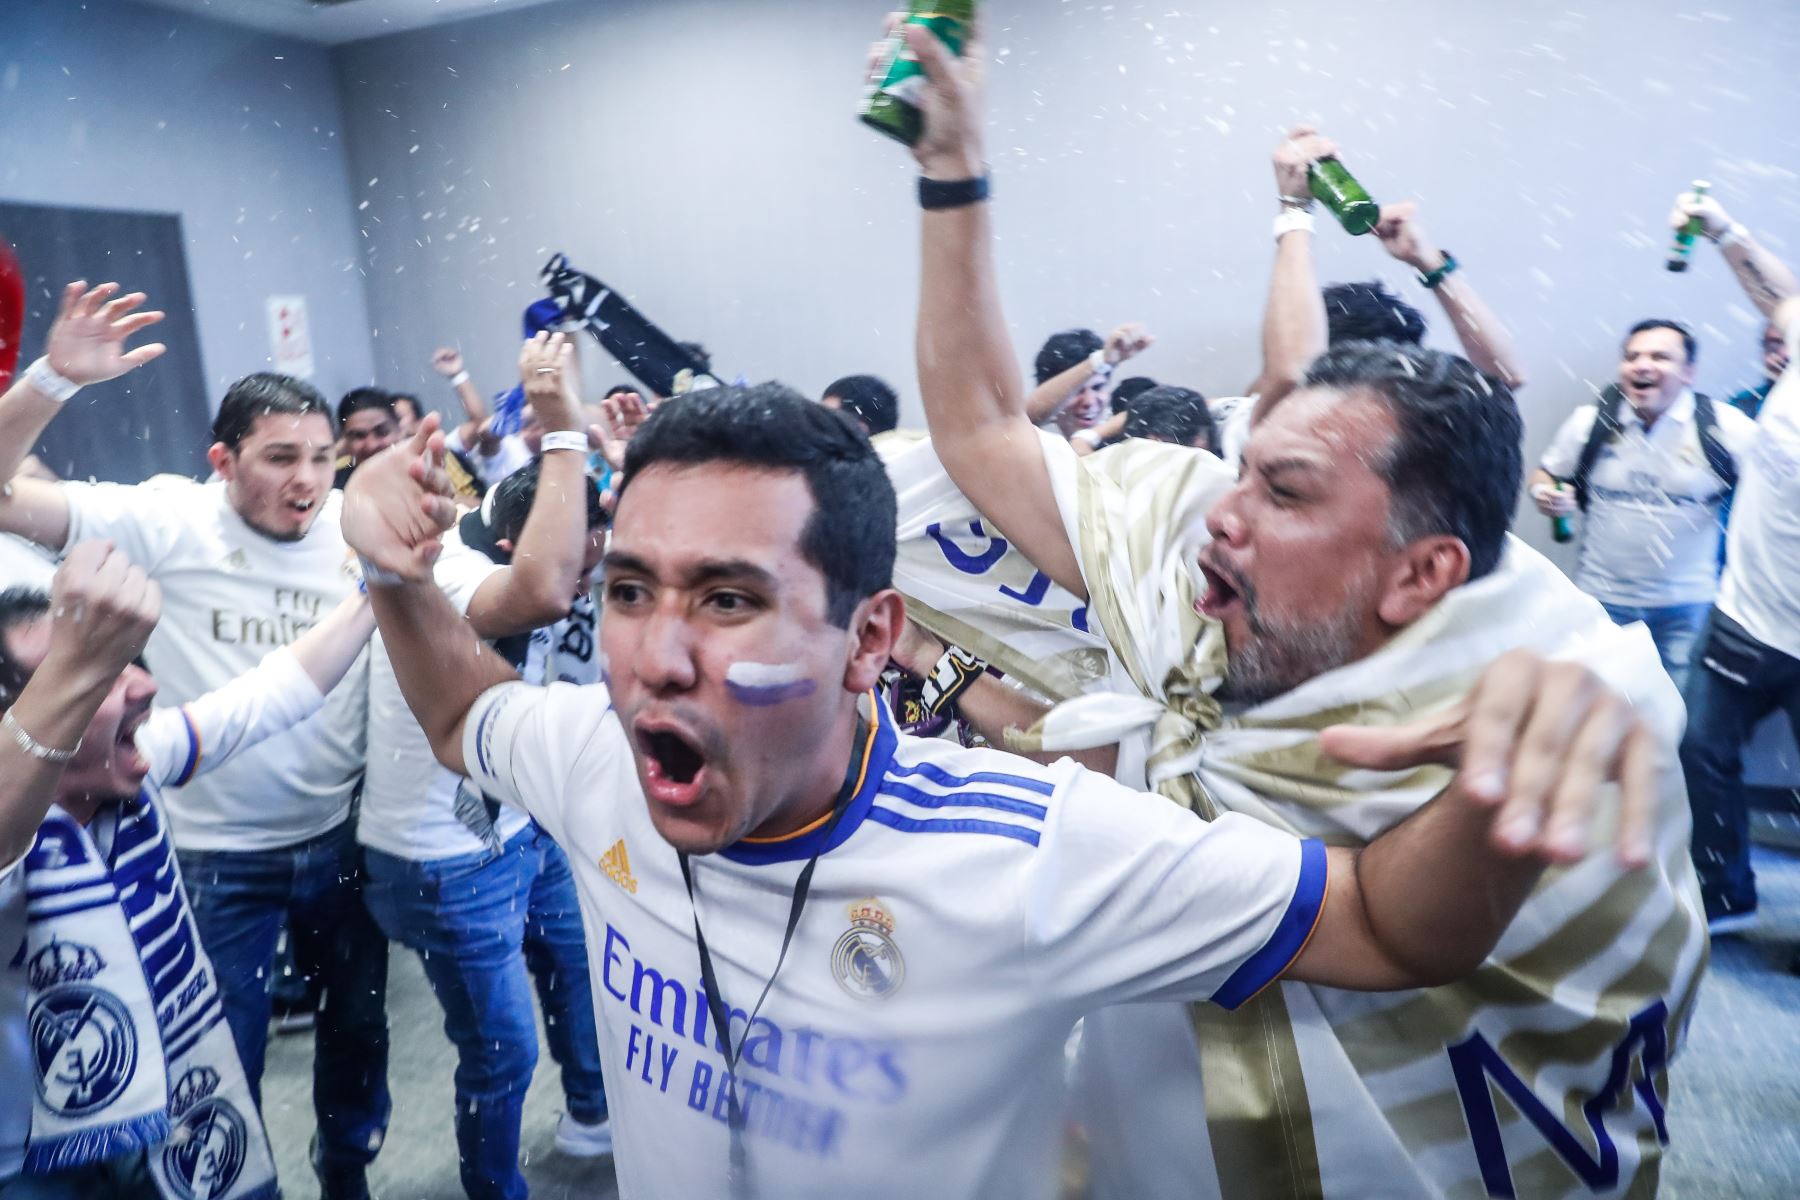 Hinchas del Real Madrid que forman parte de la Peña Perú Vikingo disfrutan la final de la Champions League ante el Liverpool, en Miraflores. Foto: ANDINA/Renato Pajuelo